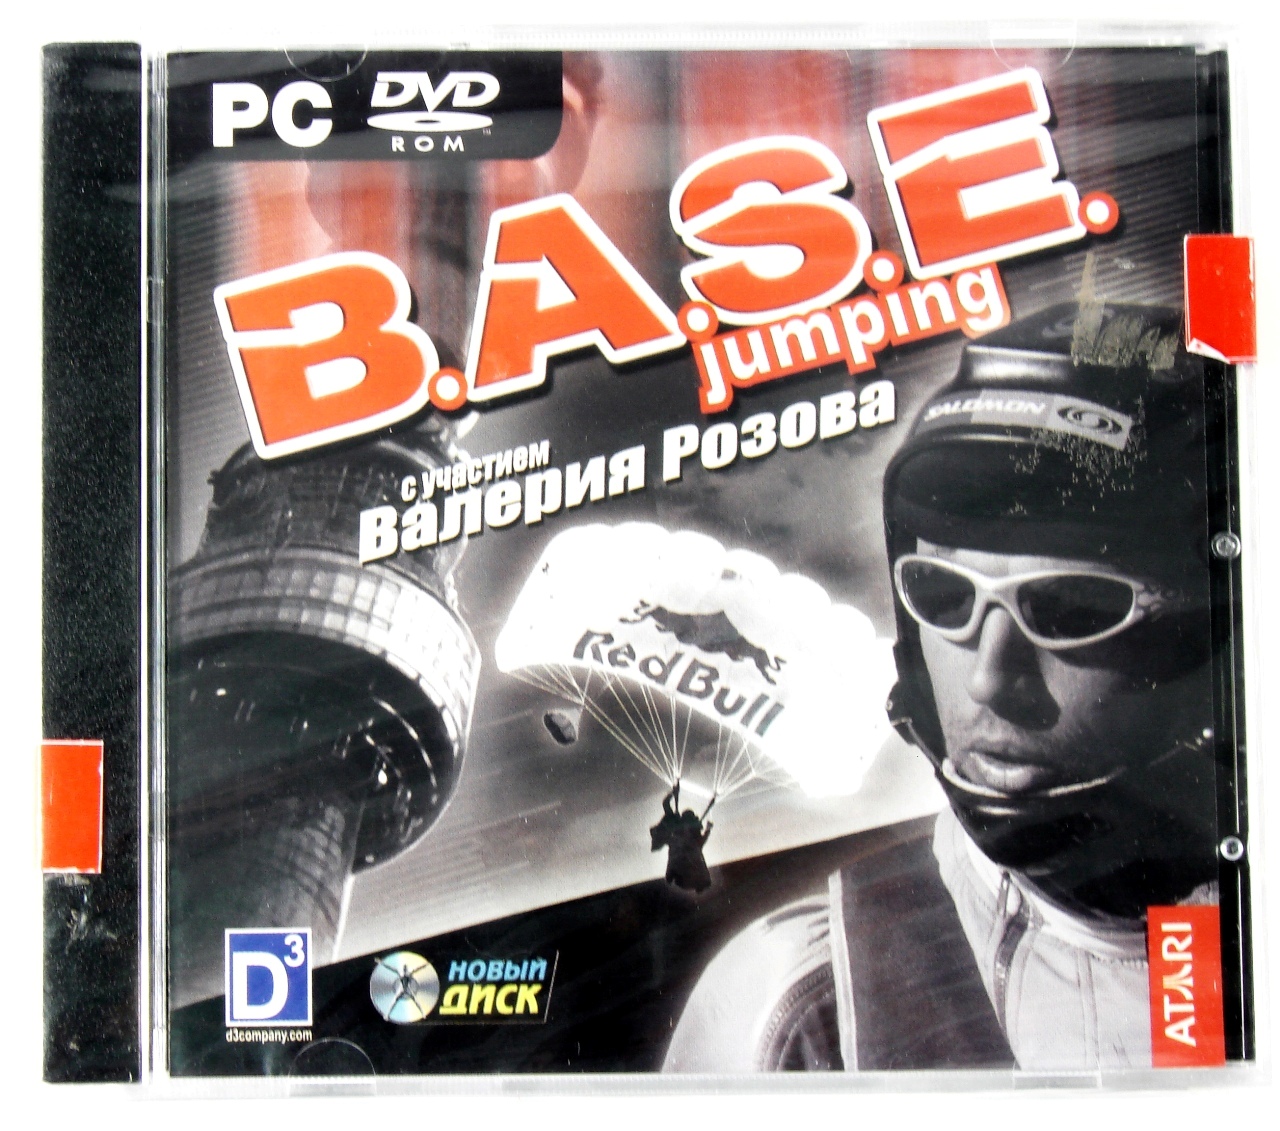 Компьютерный компакт-диск B.A.S.E. Jumping. Точка отрыва (ПК), фирма "Новый Диск", DVD